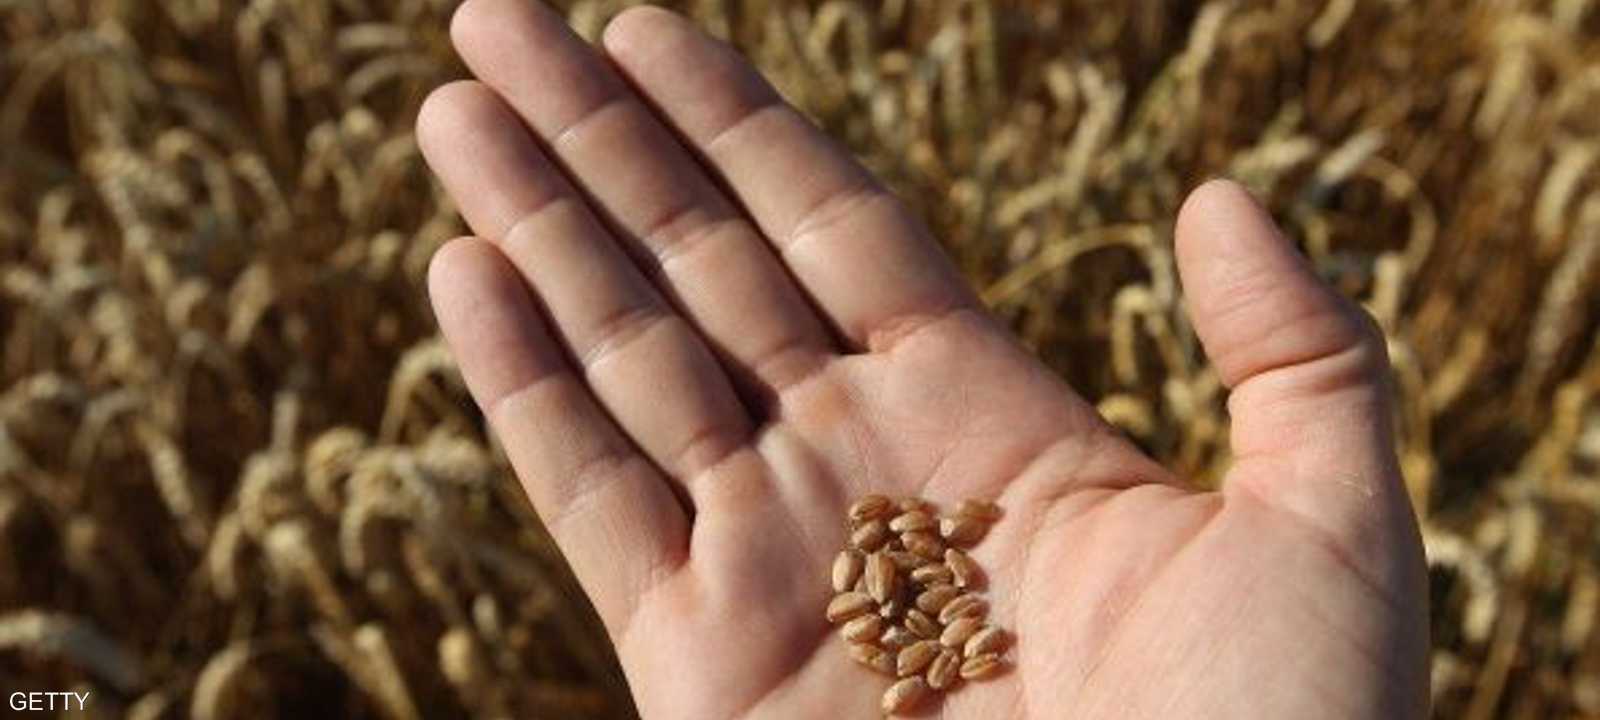 بذور الخشخاش في شحنة القمح الروماني ليست من النوع الأفيوني